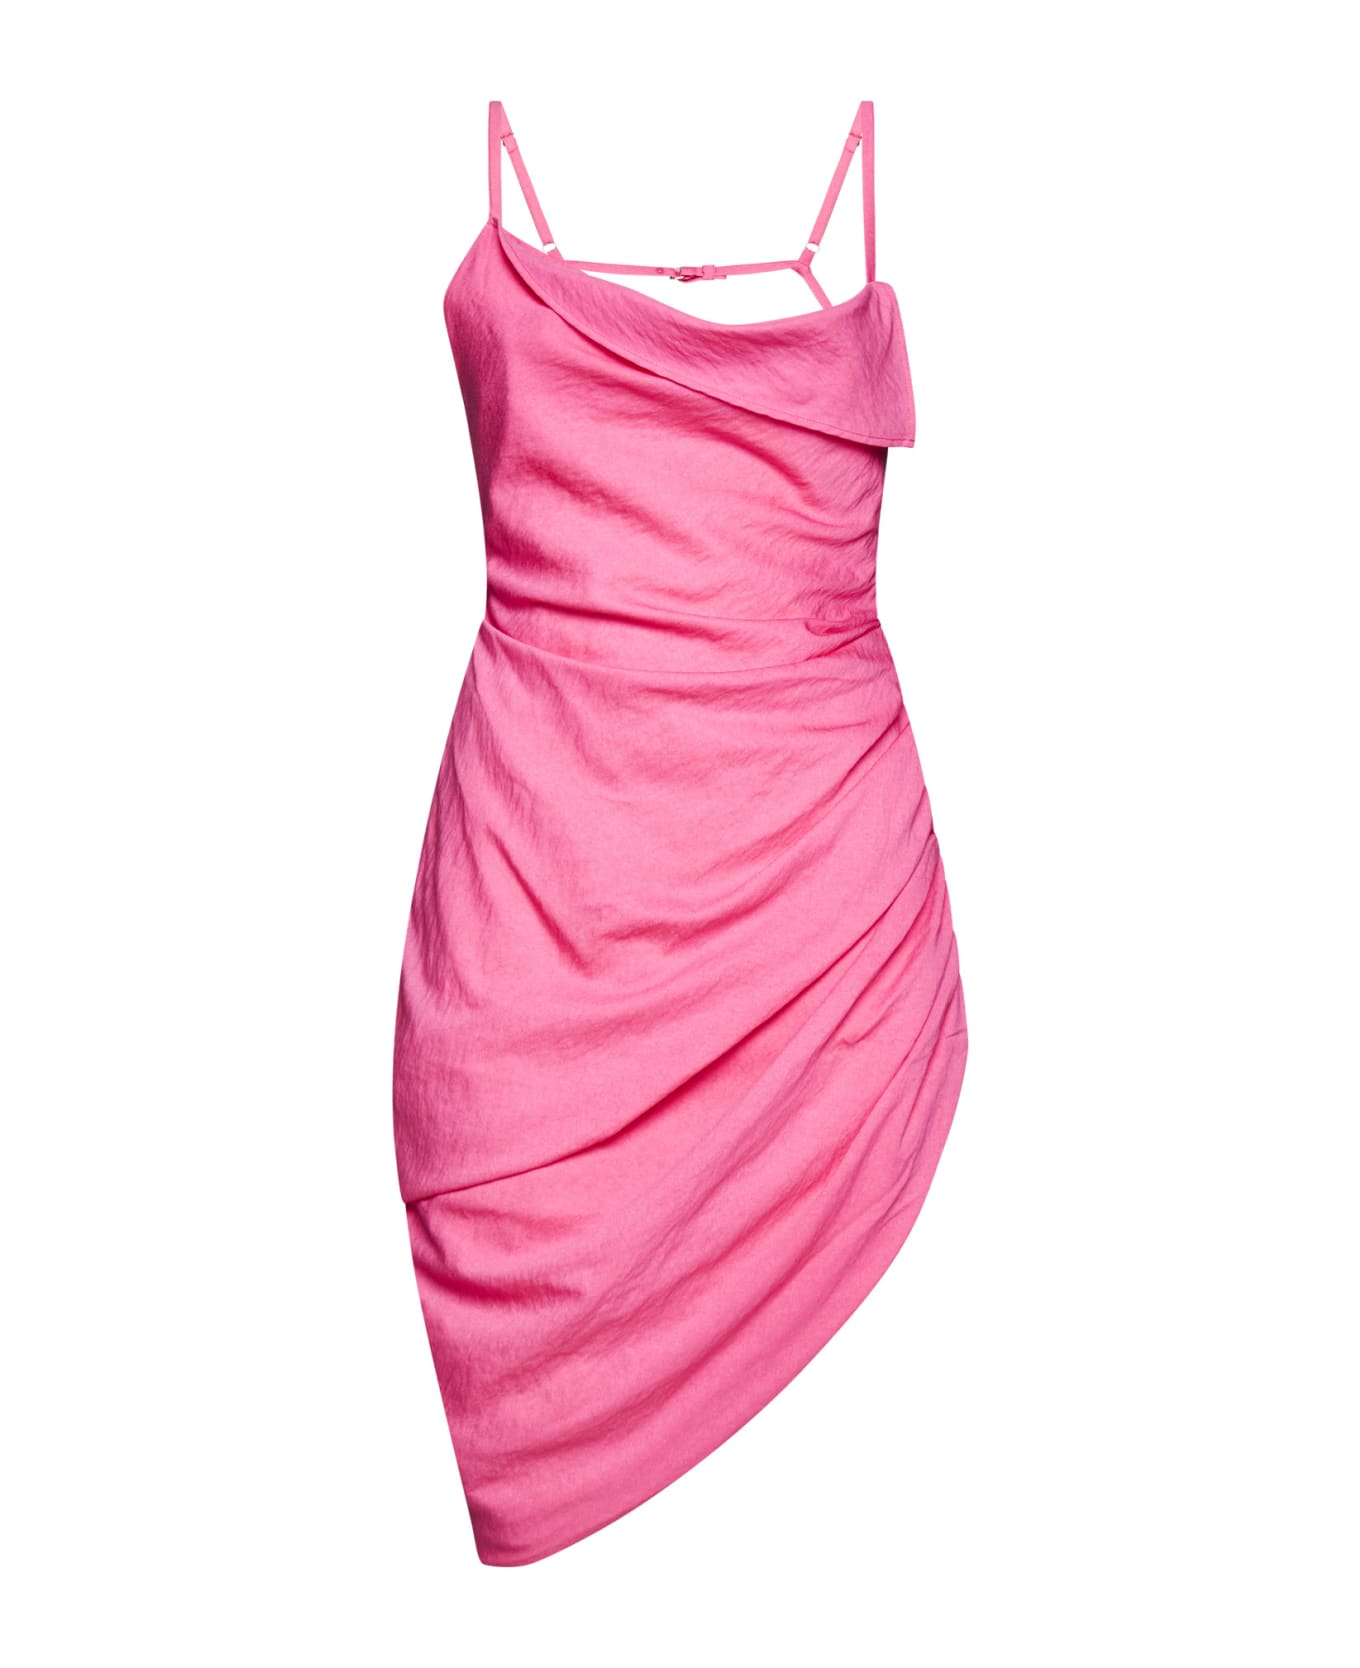 Jacquemus Saudade Stretch Viscose Dress - Pink